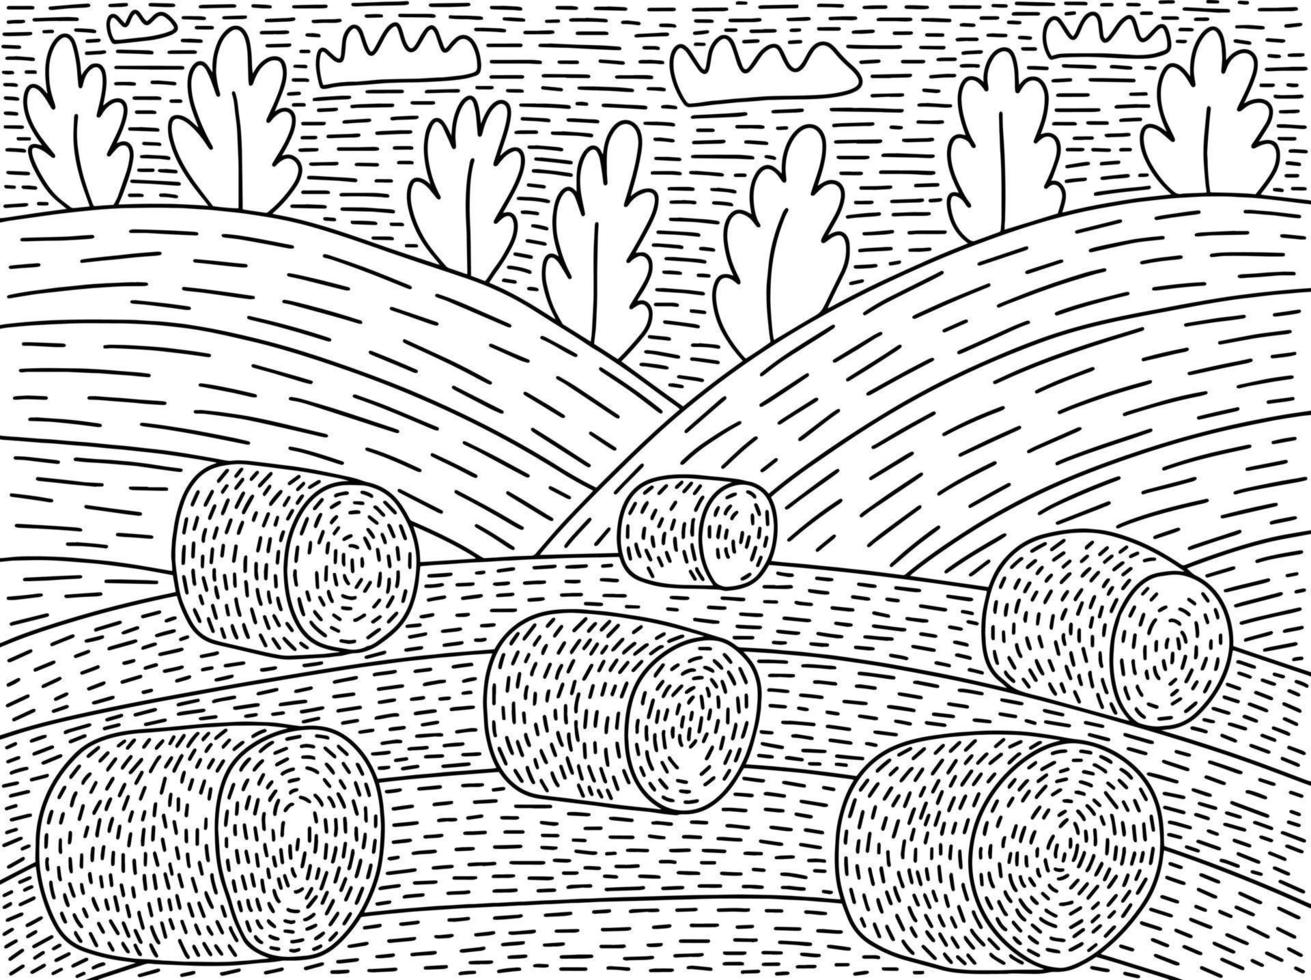 heno campo para colorear página vector ilustración. libro de colorear de paisaje de otoño de campo de heno dibujado a mano